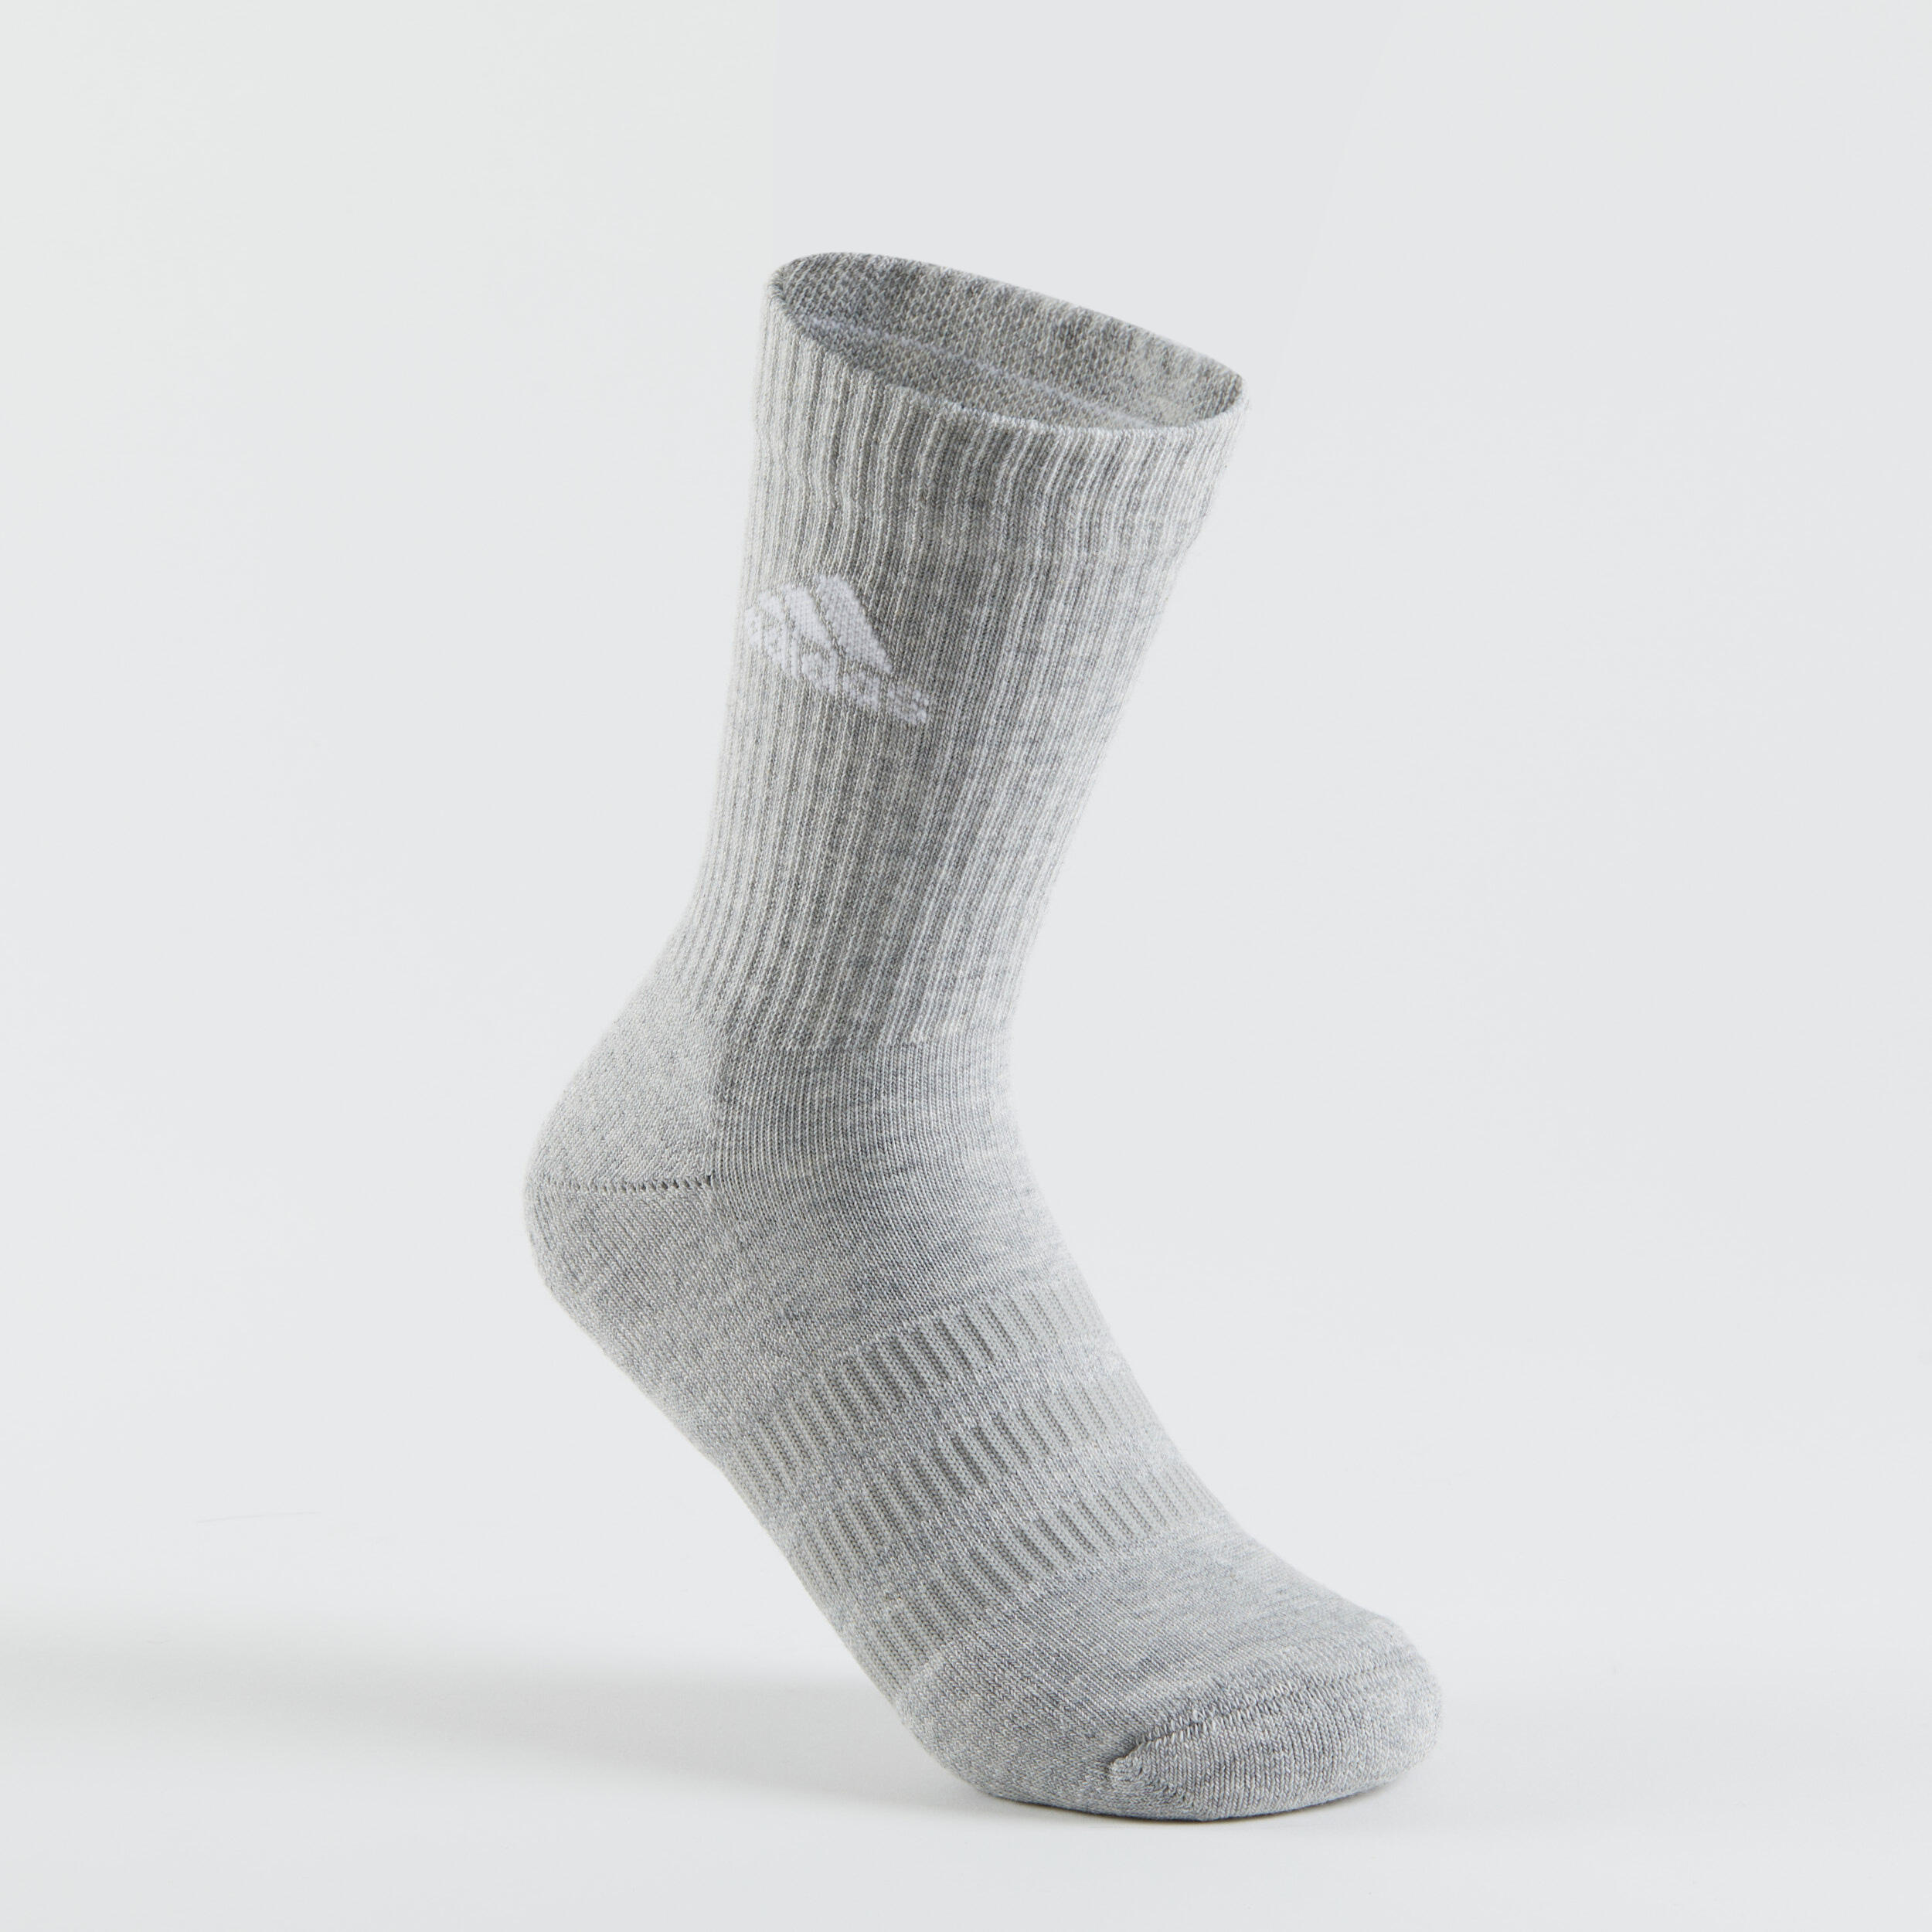 High Sports Socks Tri-Pack - Grey/White/Black 2/14